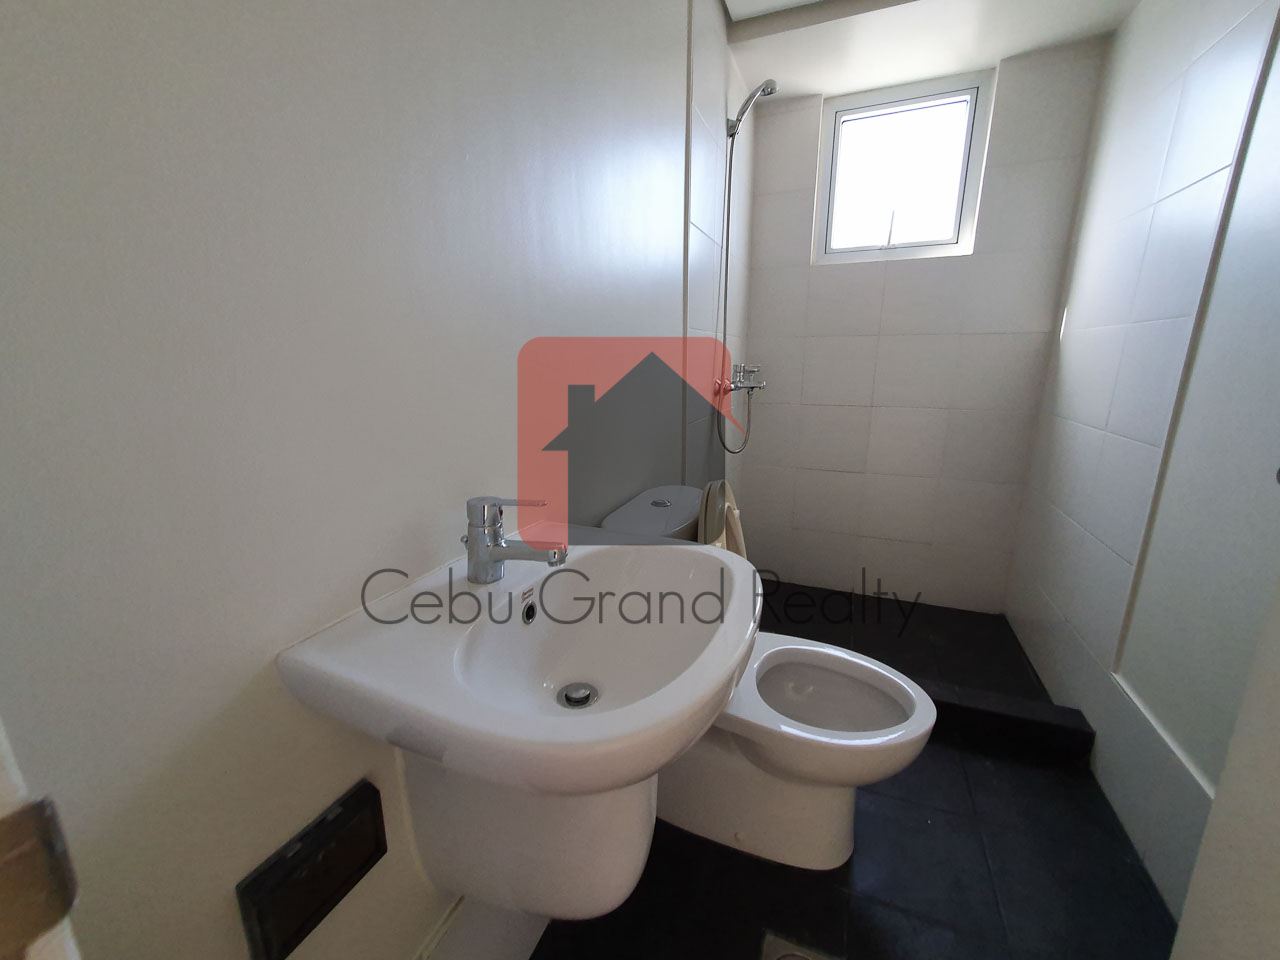 SRBSP2 2 Bedroom Condo for Sale in Cebu Business Park Cebu Grand Realty-10